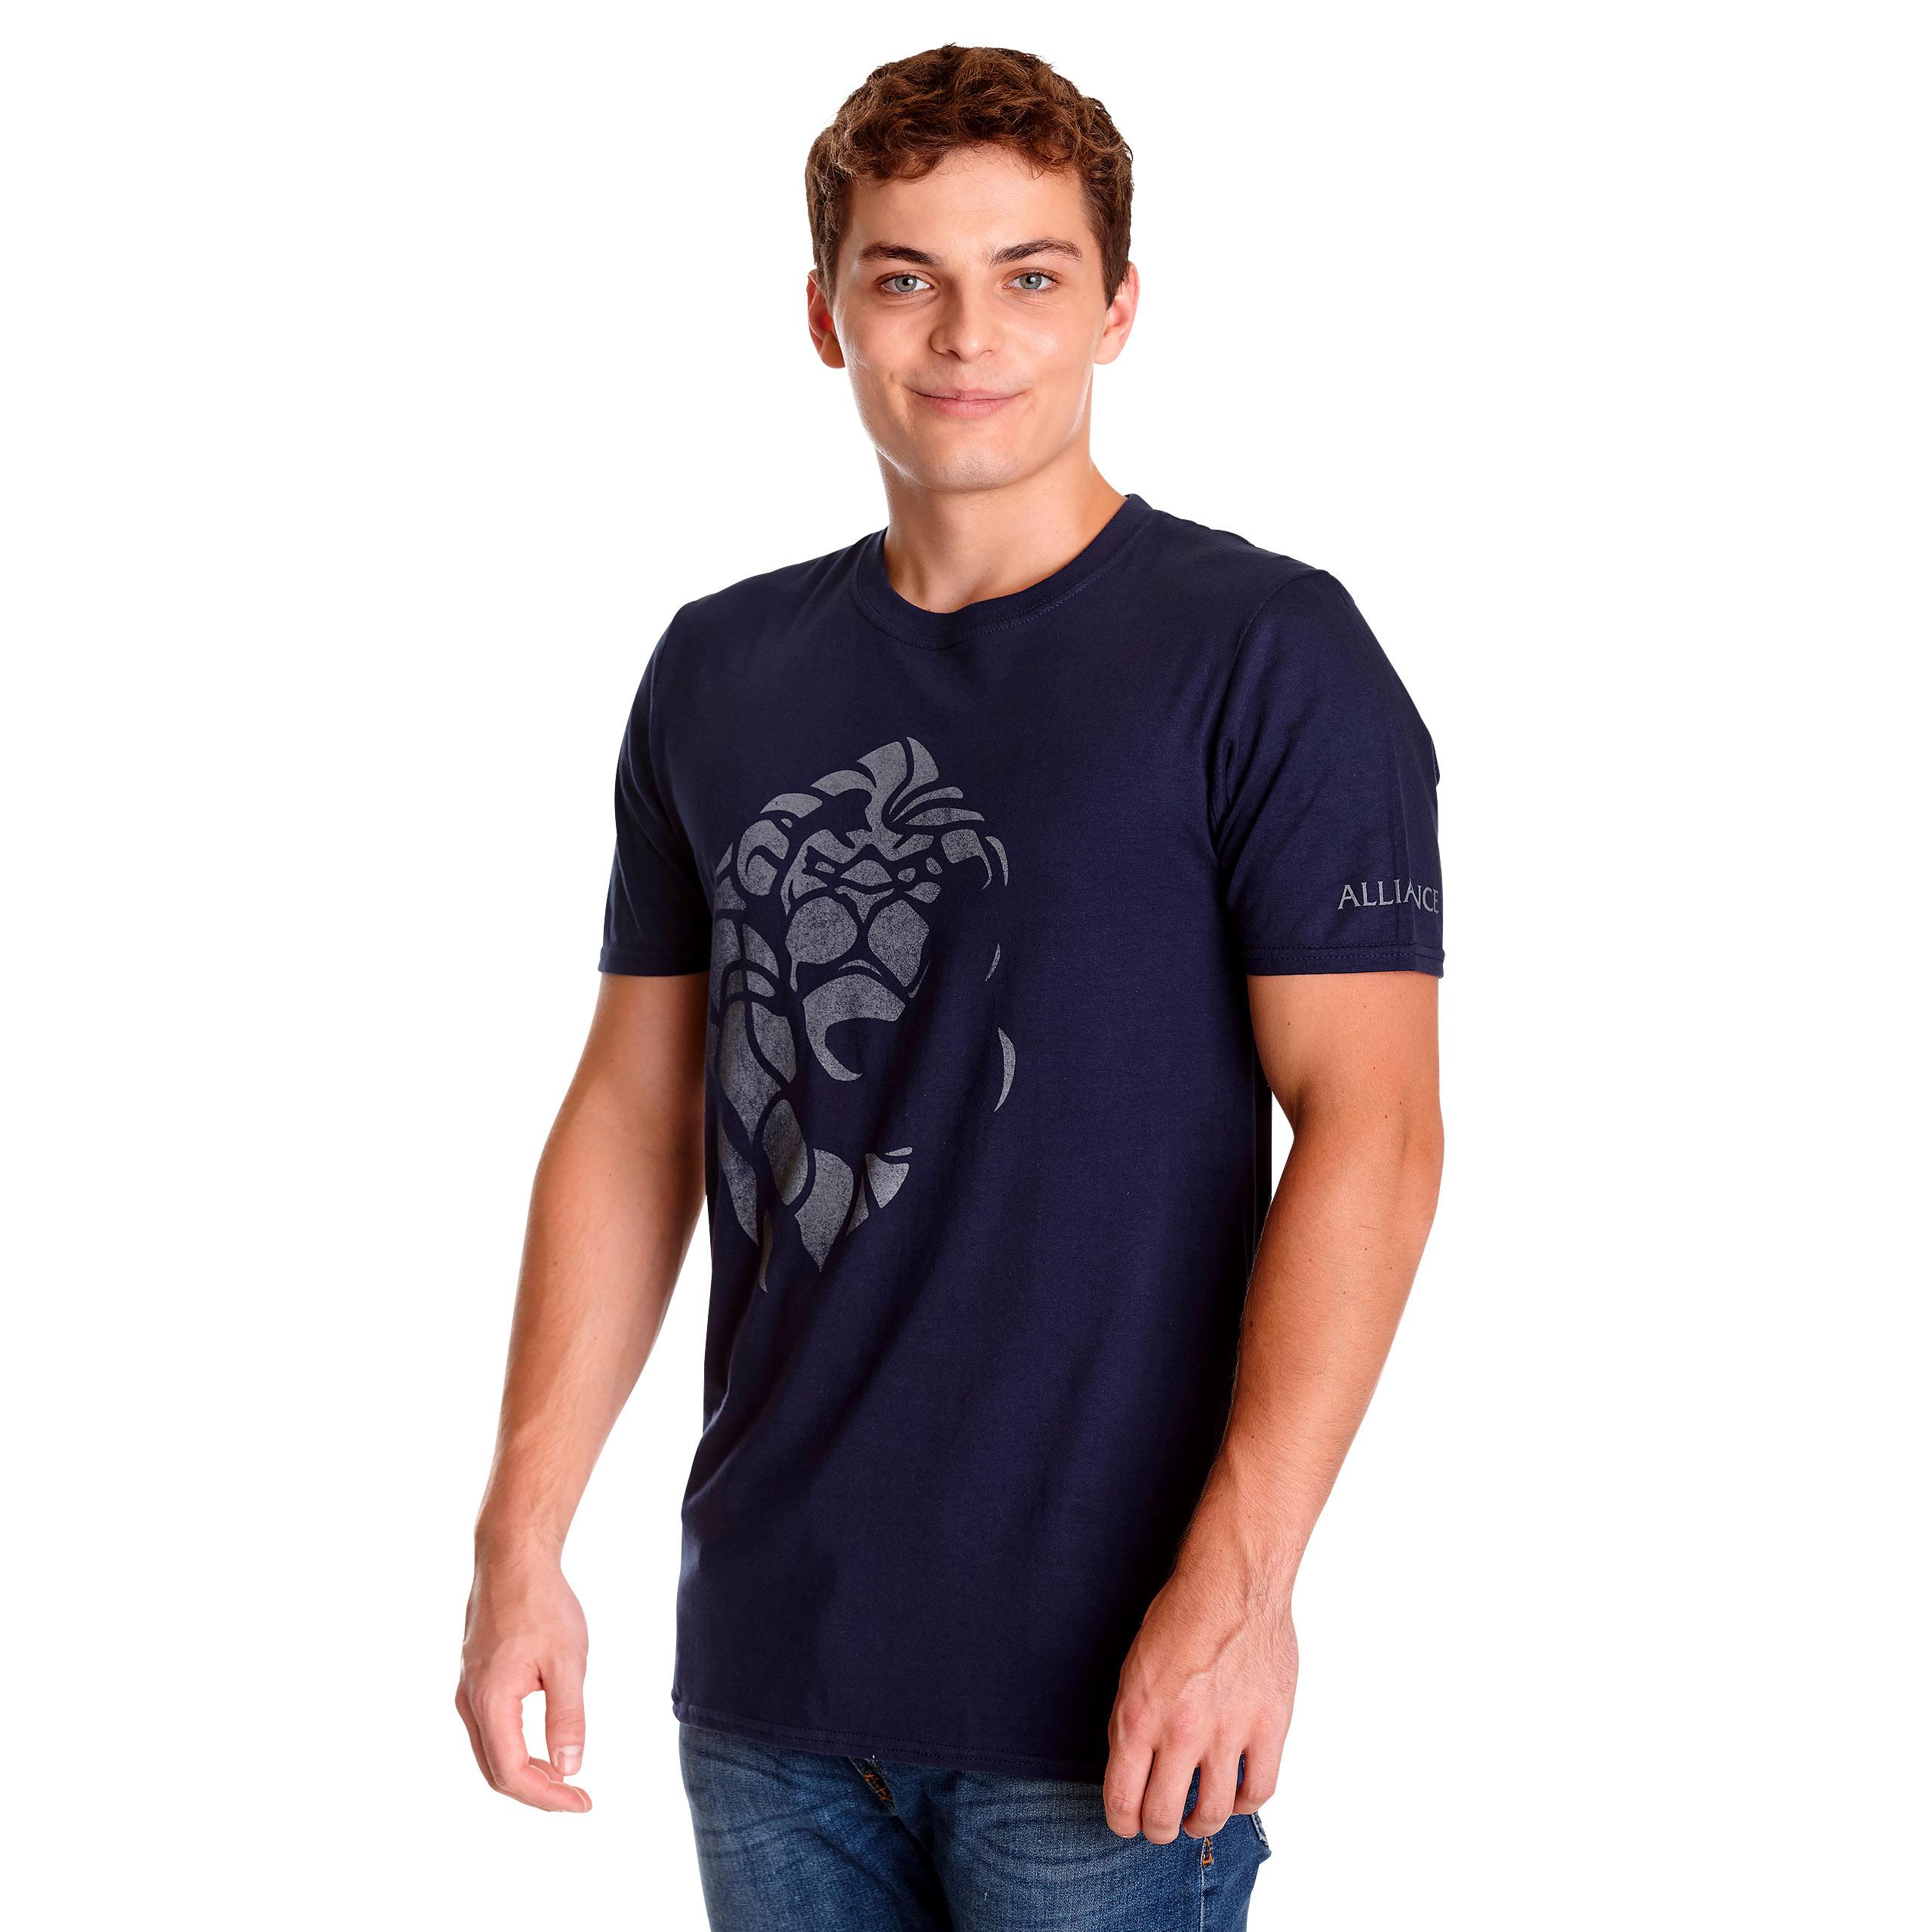 World of Warcraft - Alliance Always T-Shirt blau